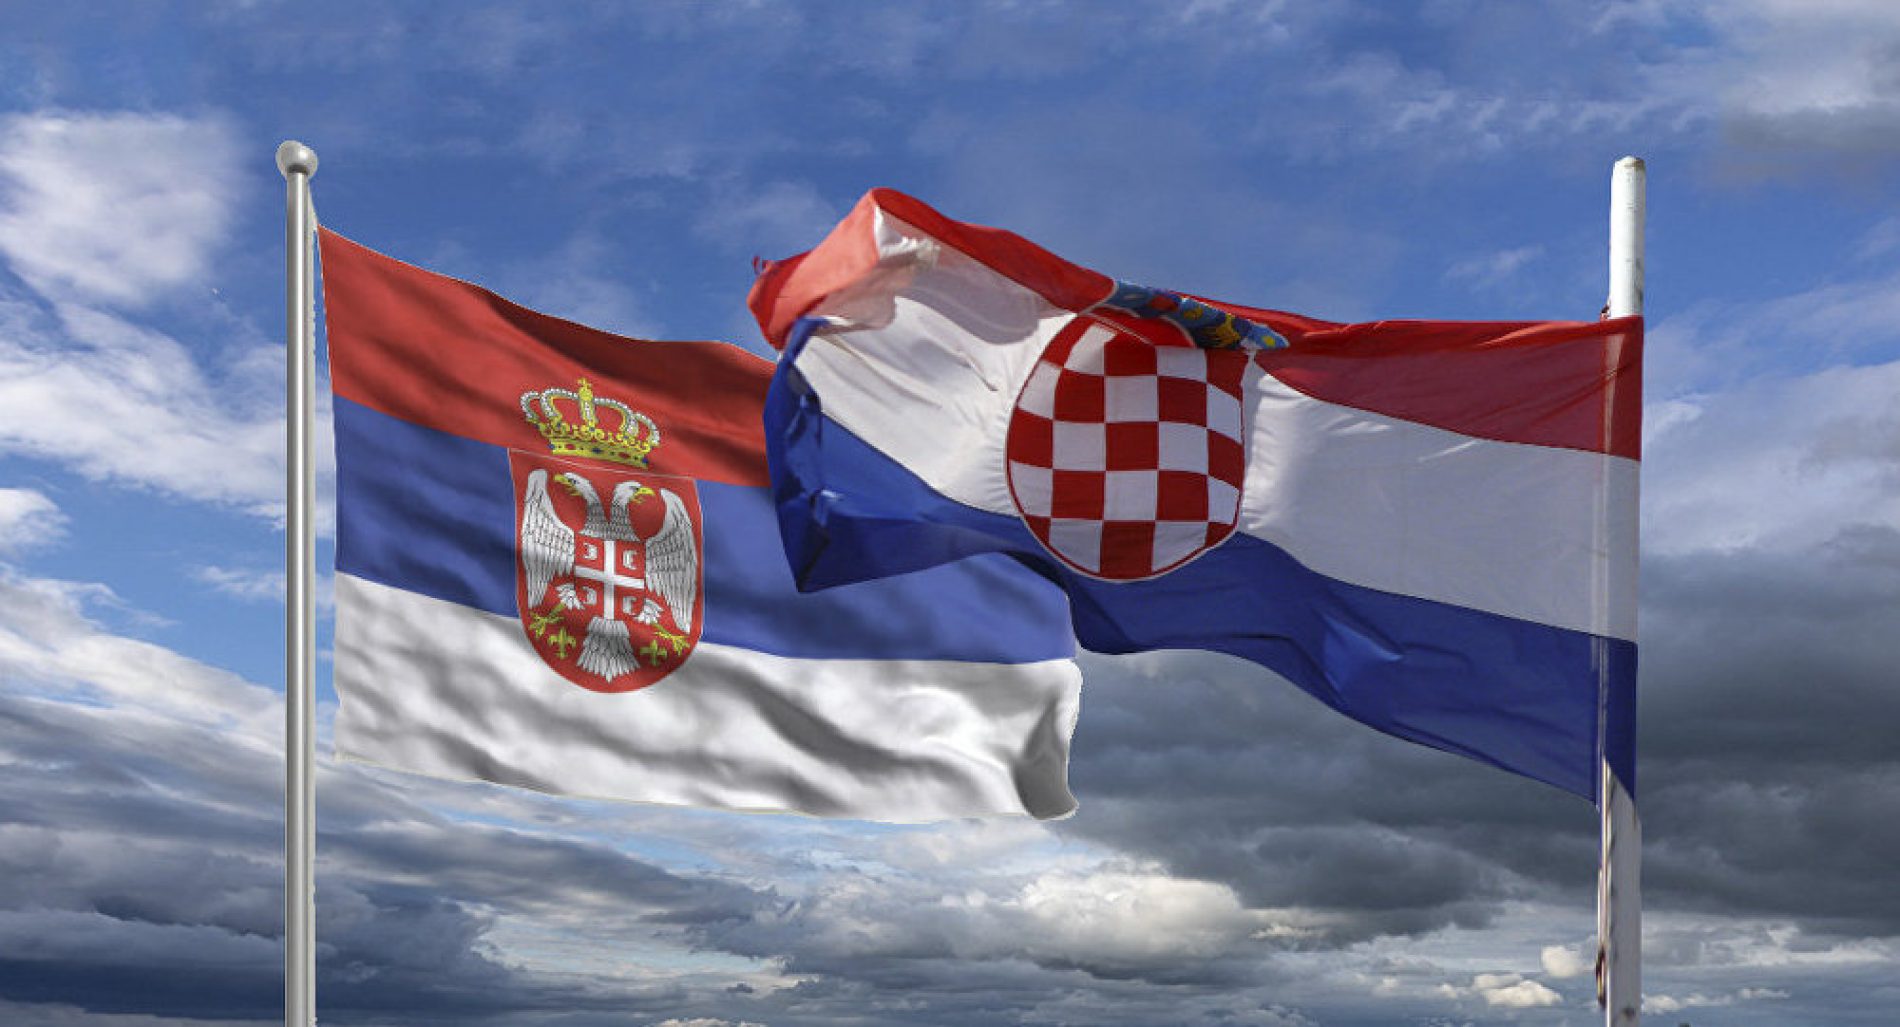 Najgluplje nacije! Hrvatska prva, Srbija peta prema anketi na portalu The Top Tens